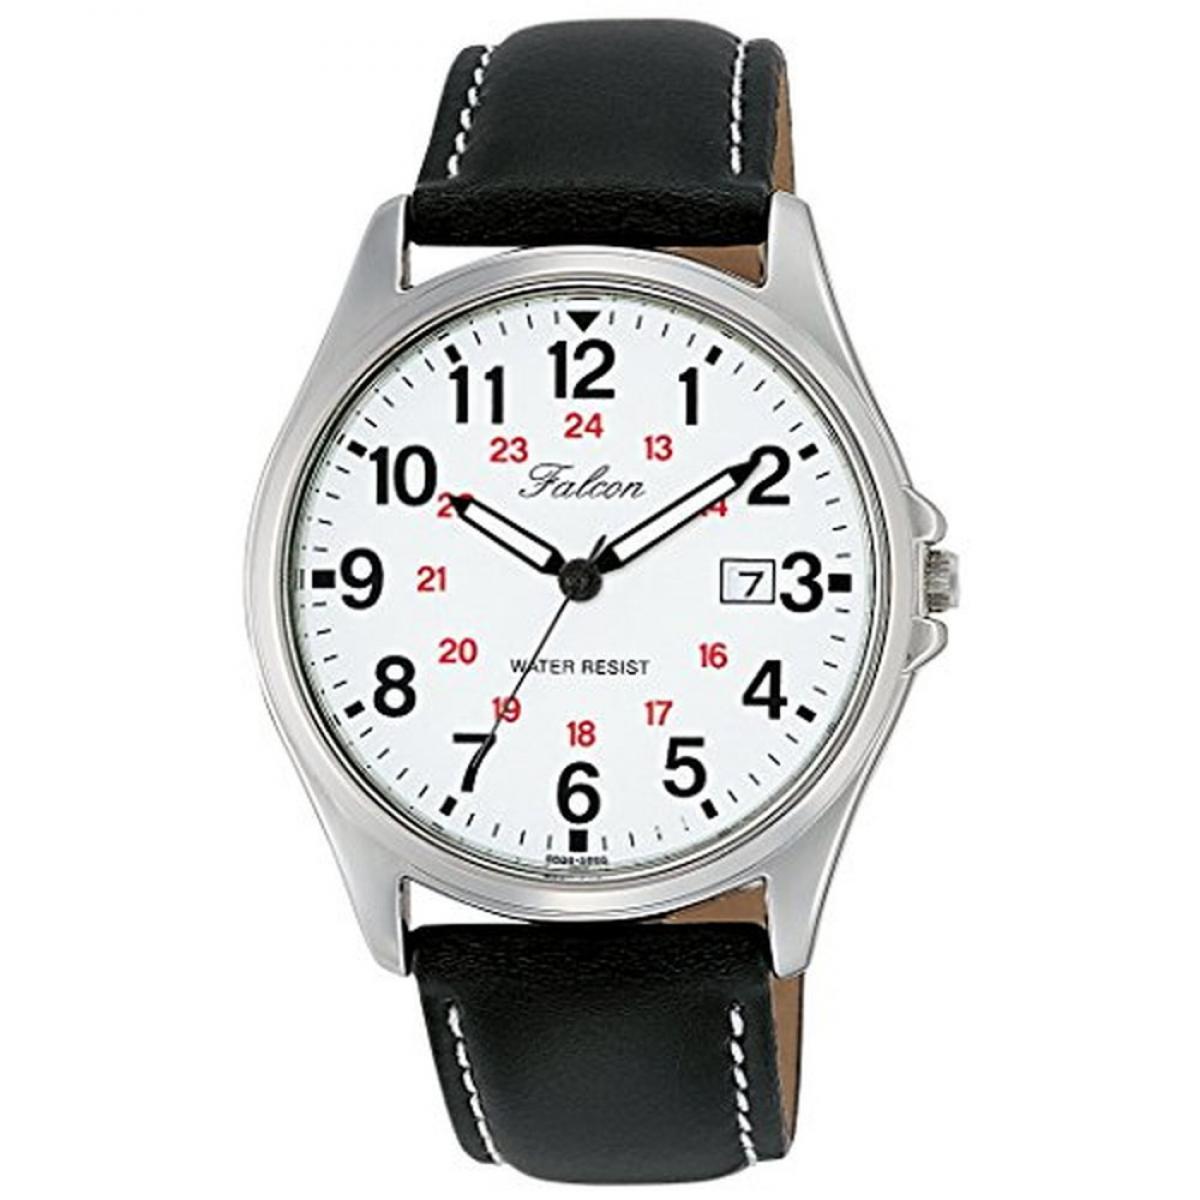 [シチズン キューアンドキュー]CITIZEN Q&Q 腕時計 Falcon ファルコン アナログ 革ベルト 日付 表示 ホワイト D026-304 メンズ